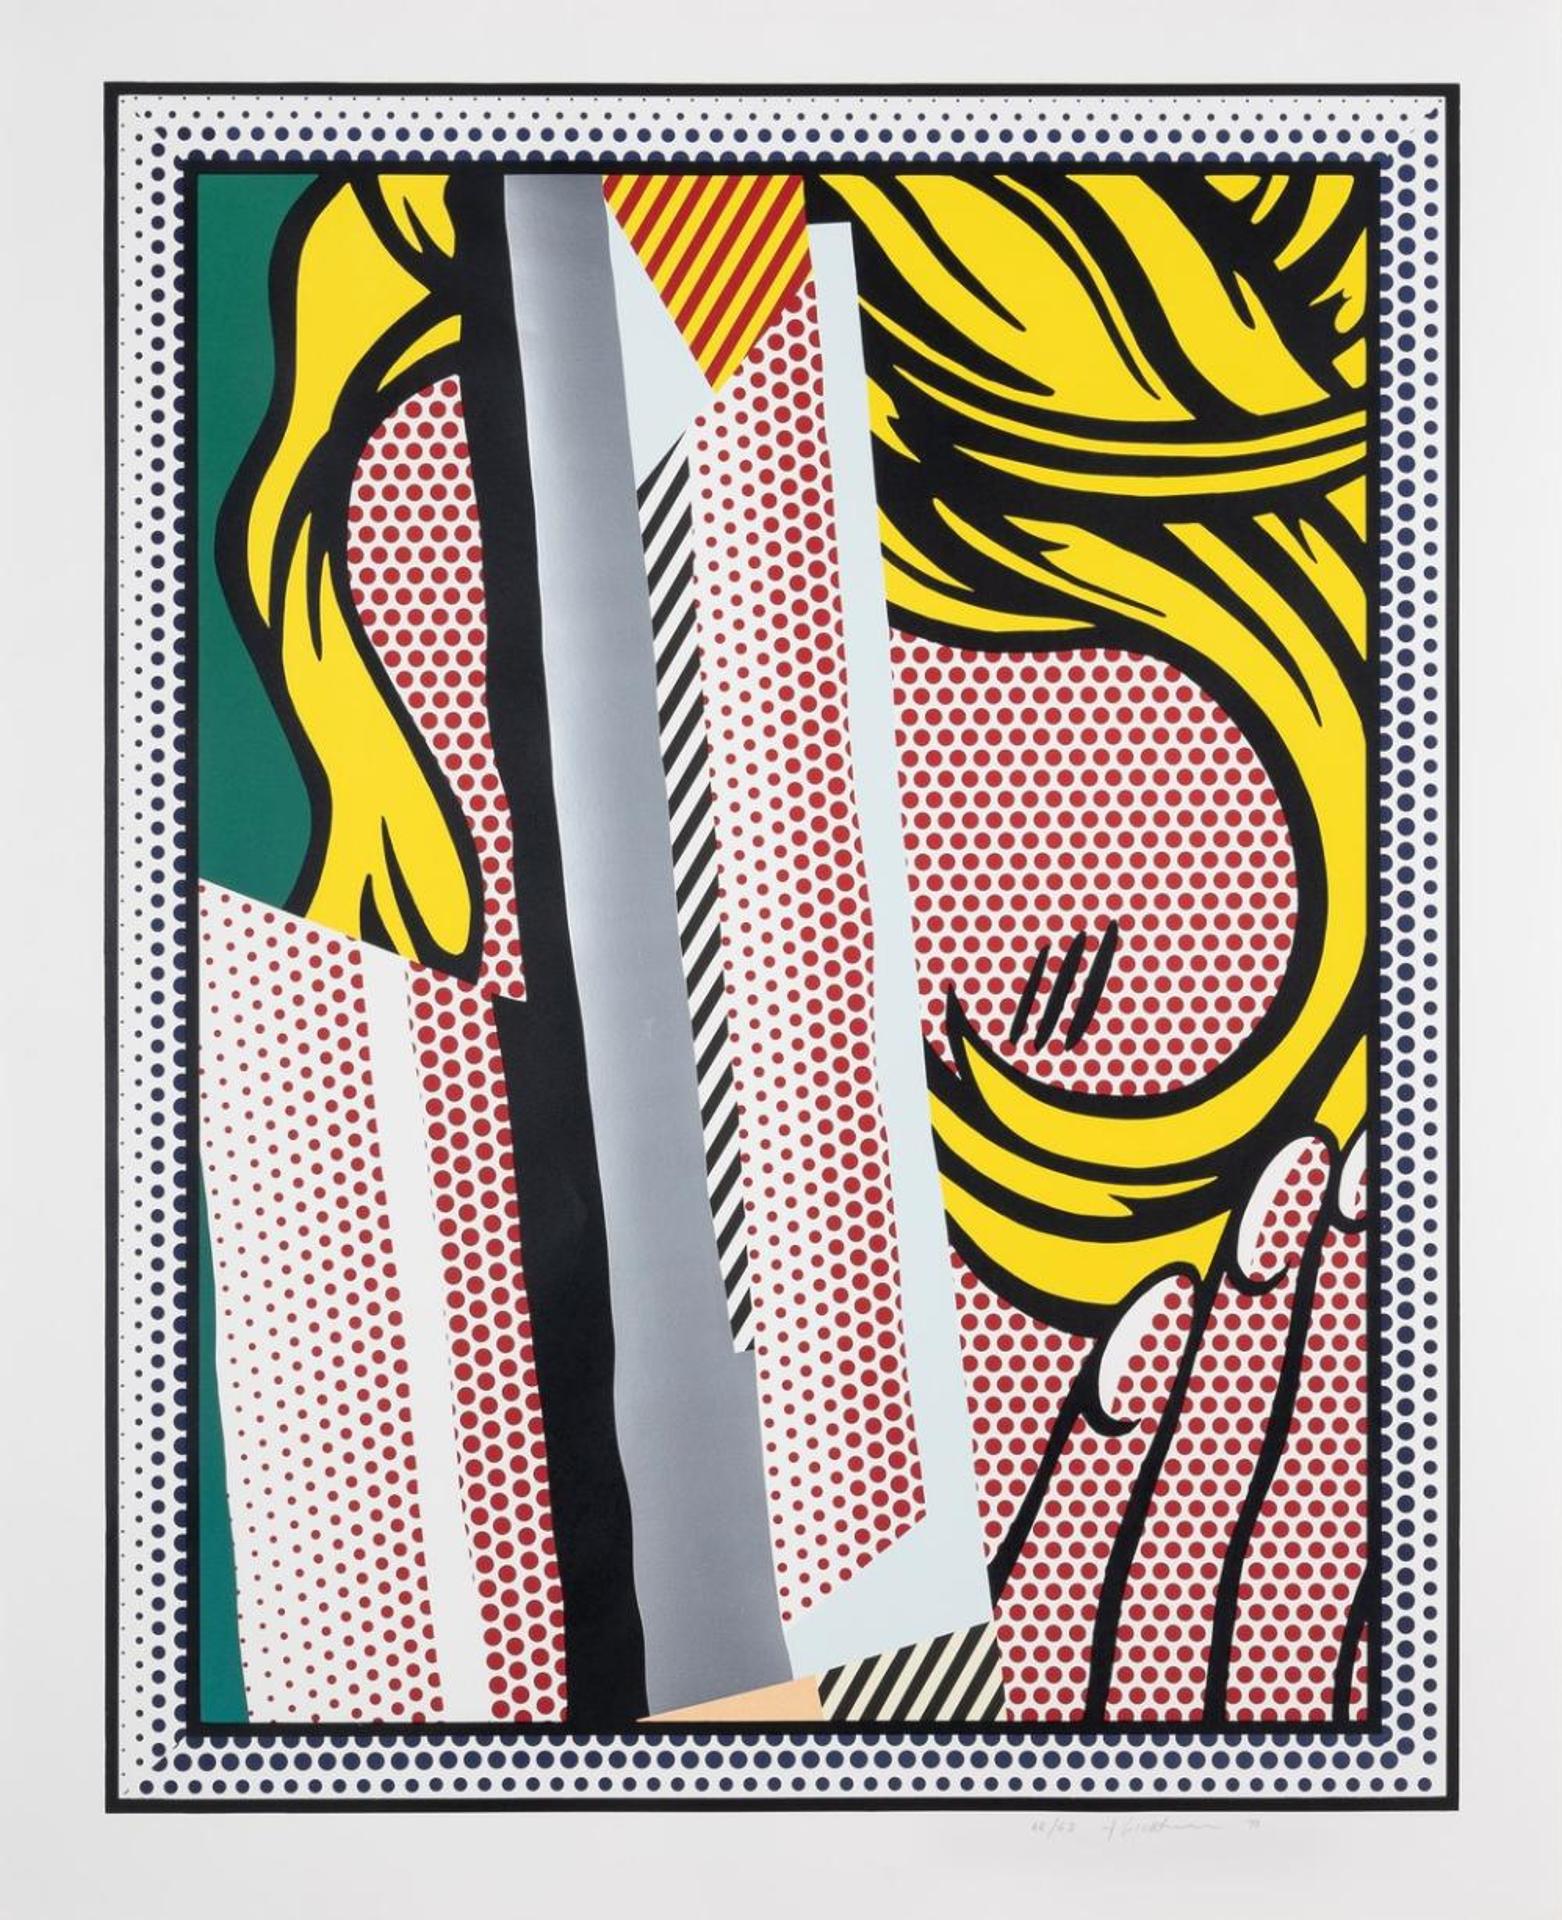 Roy Lichtenstein (1923-1997) - Reflections on Hair